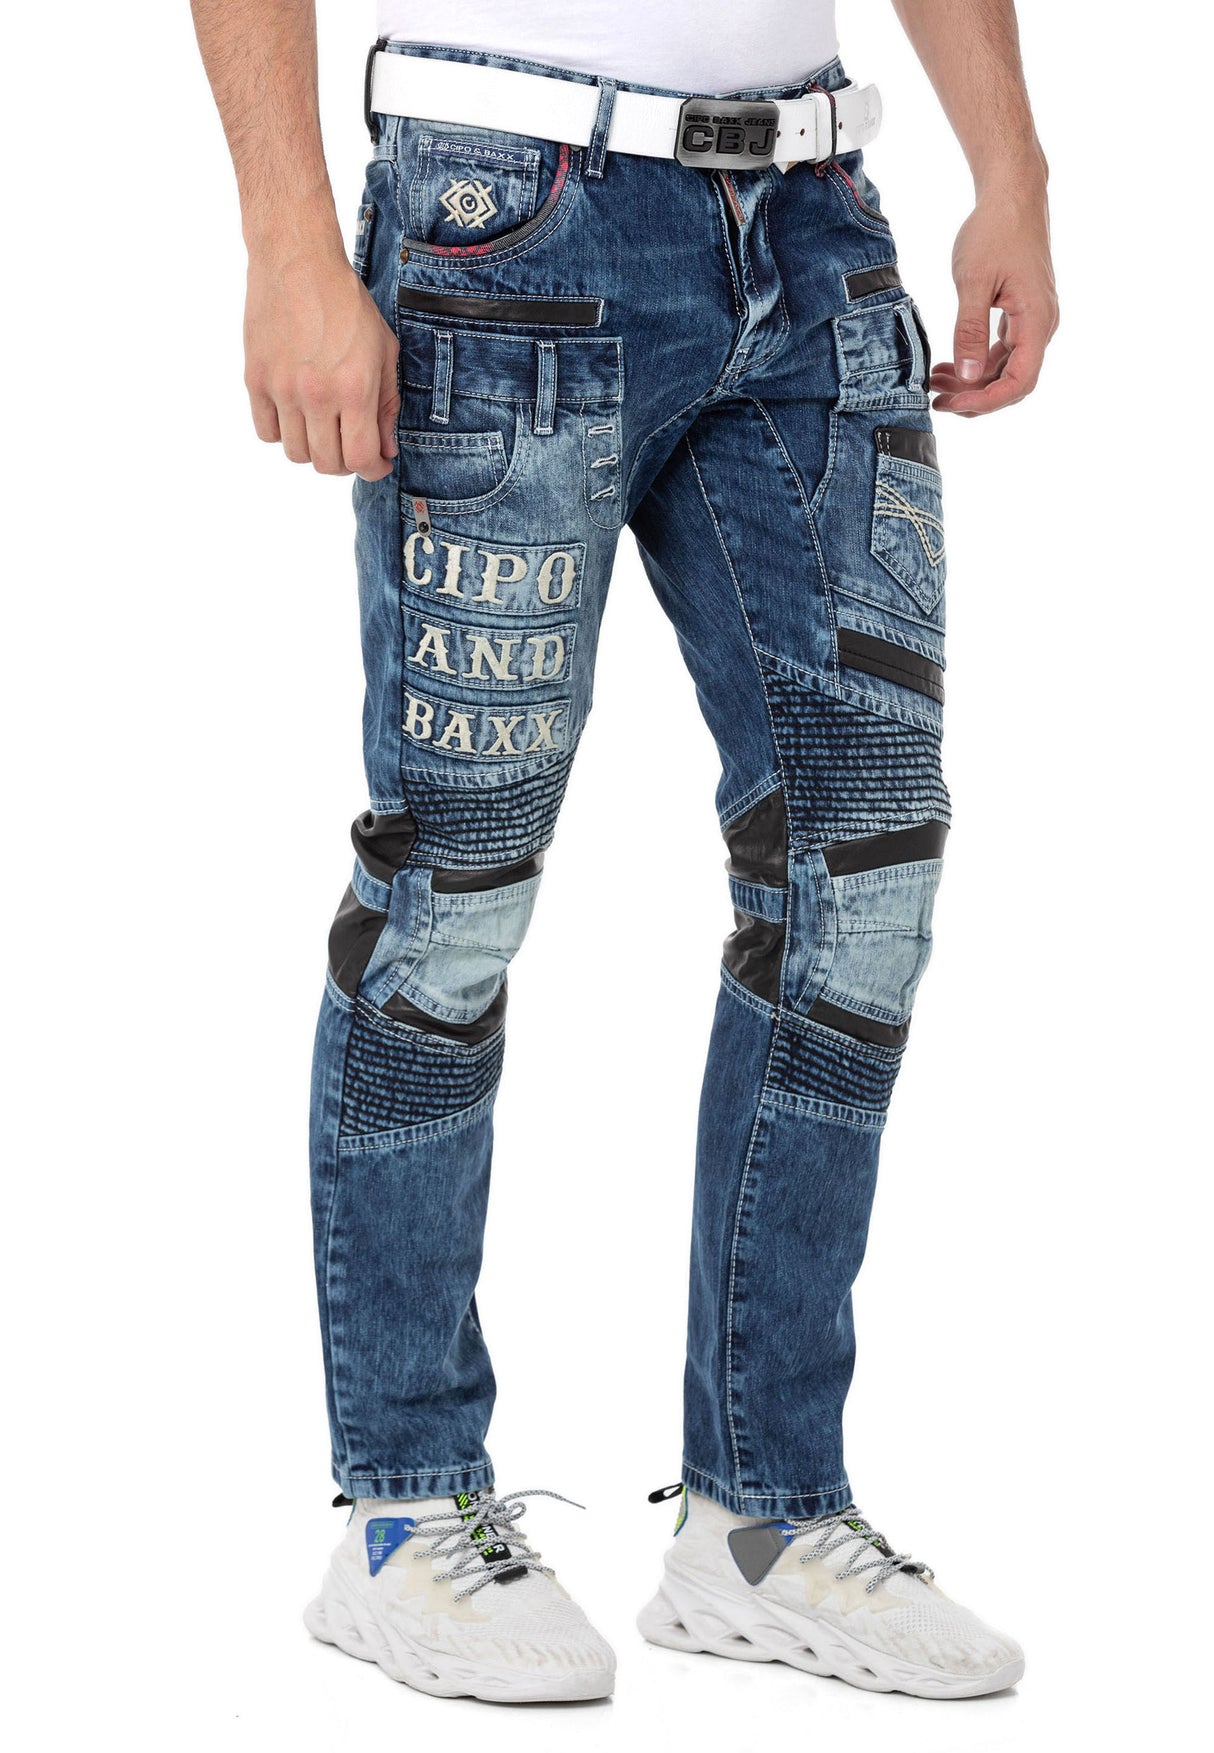 CD637 Herren bequeme Jeans im coolen Look